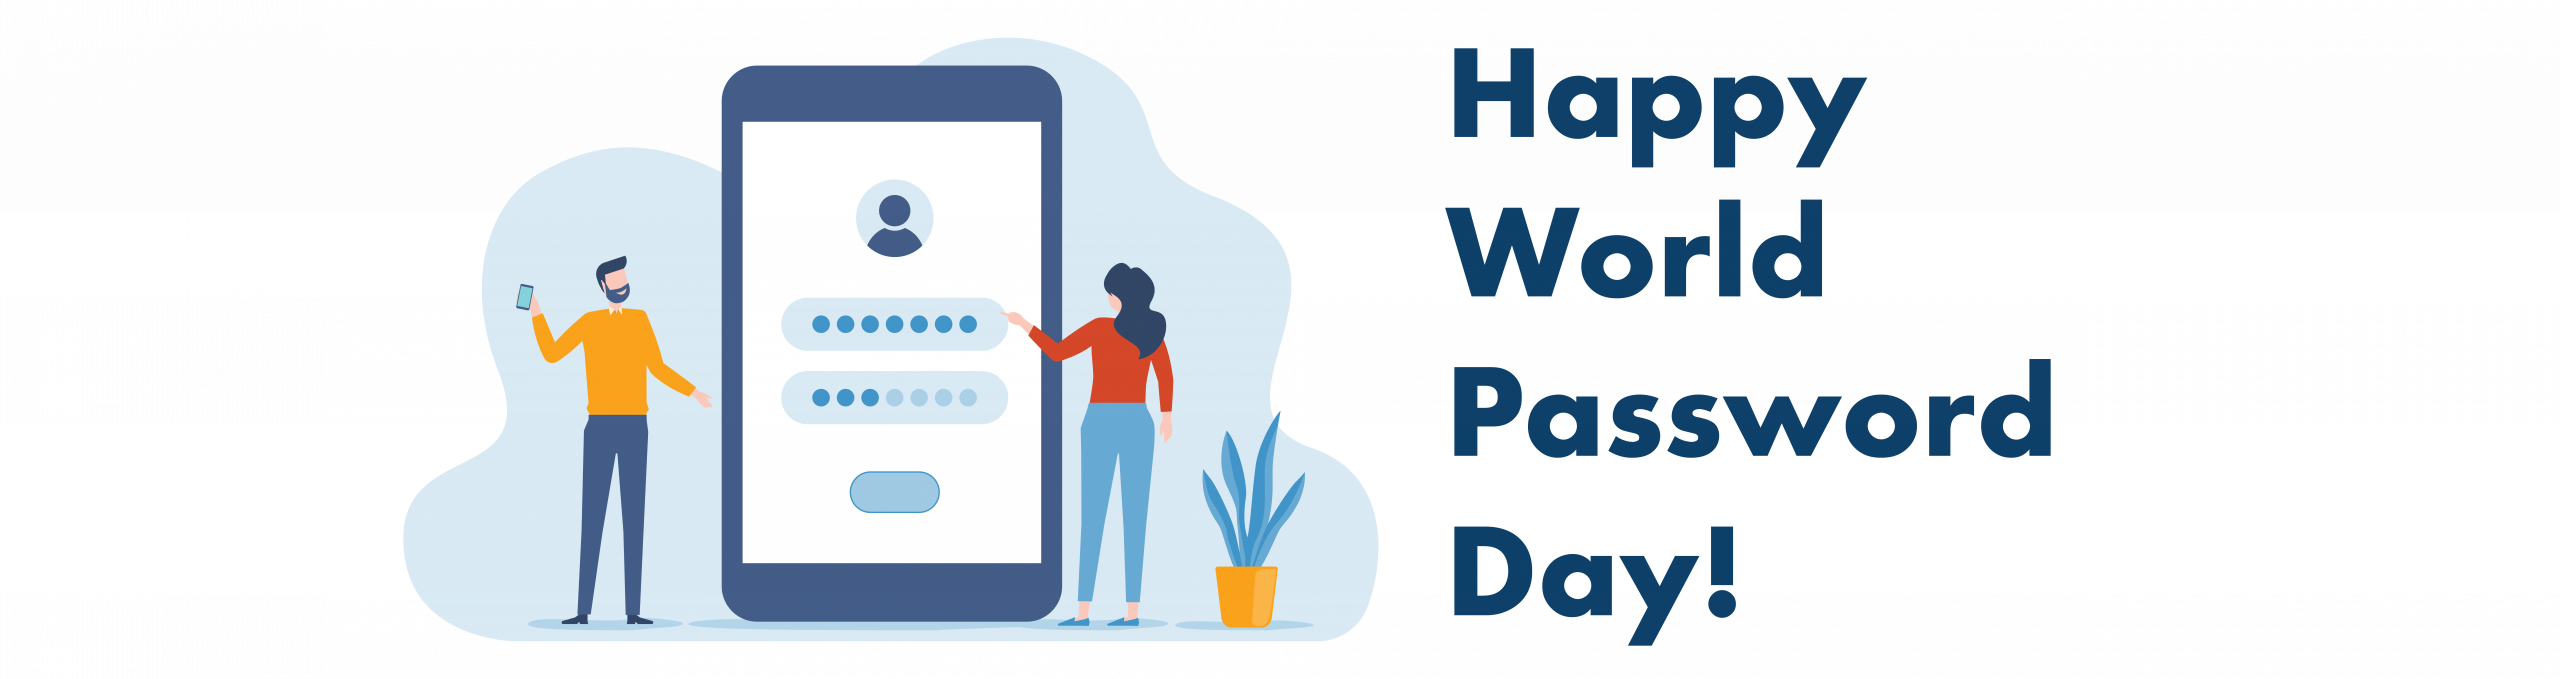 Happy World Password Day